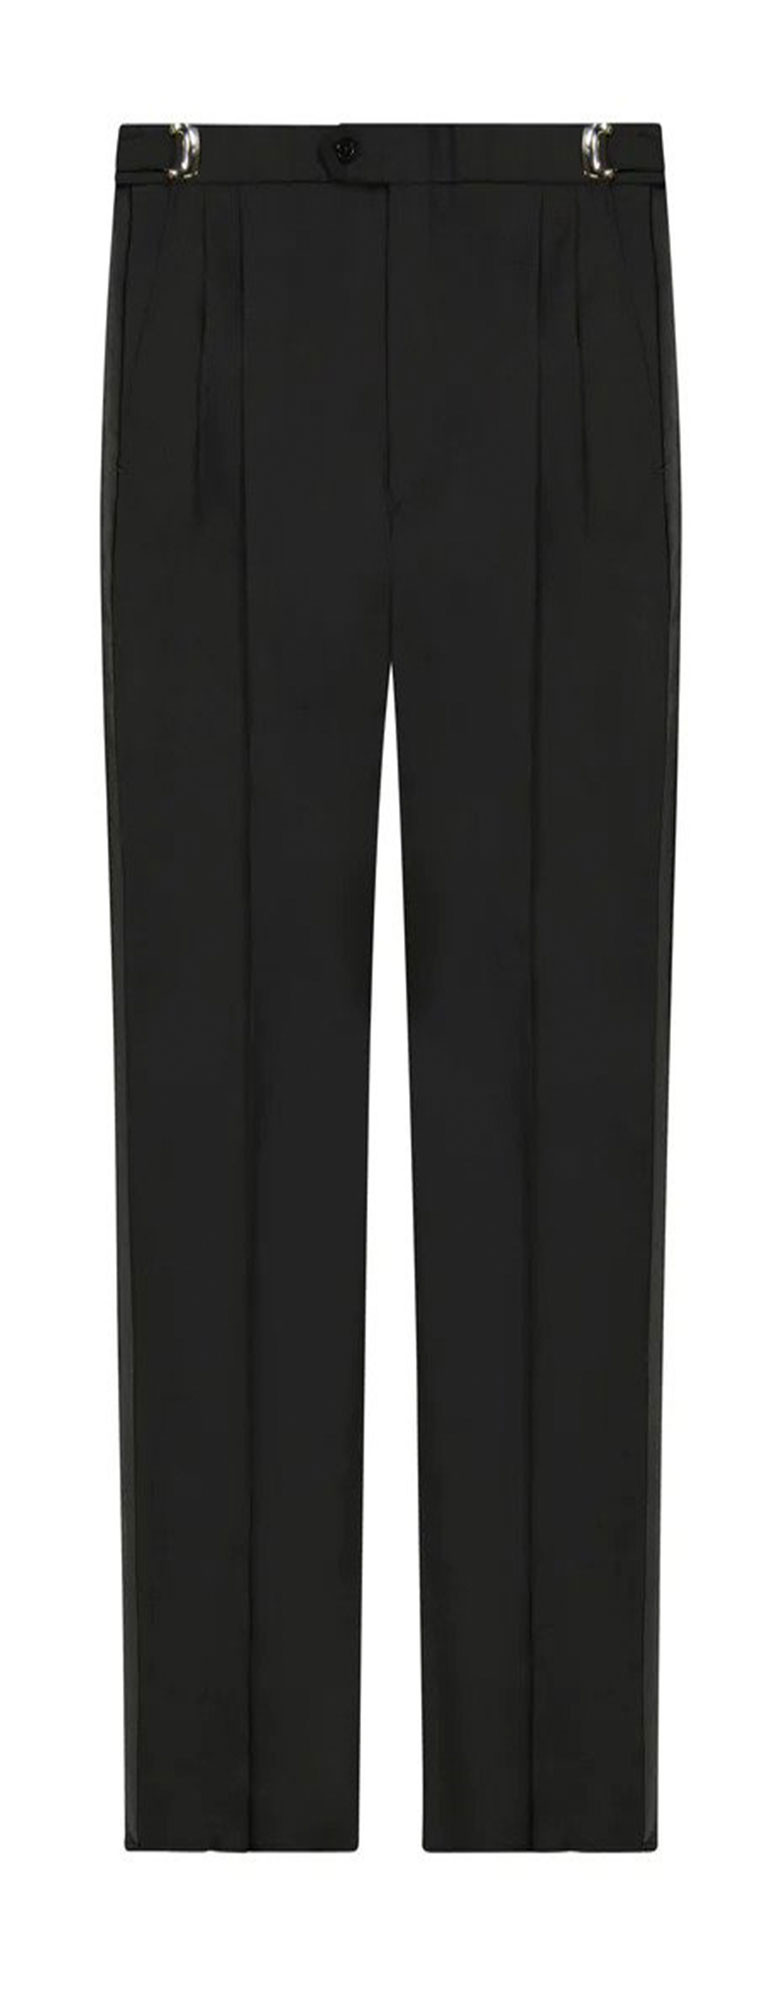 Black Pleated Adjustable Tuxedo Pants